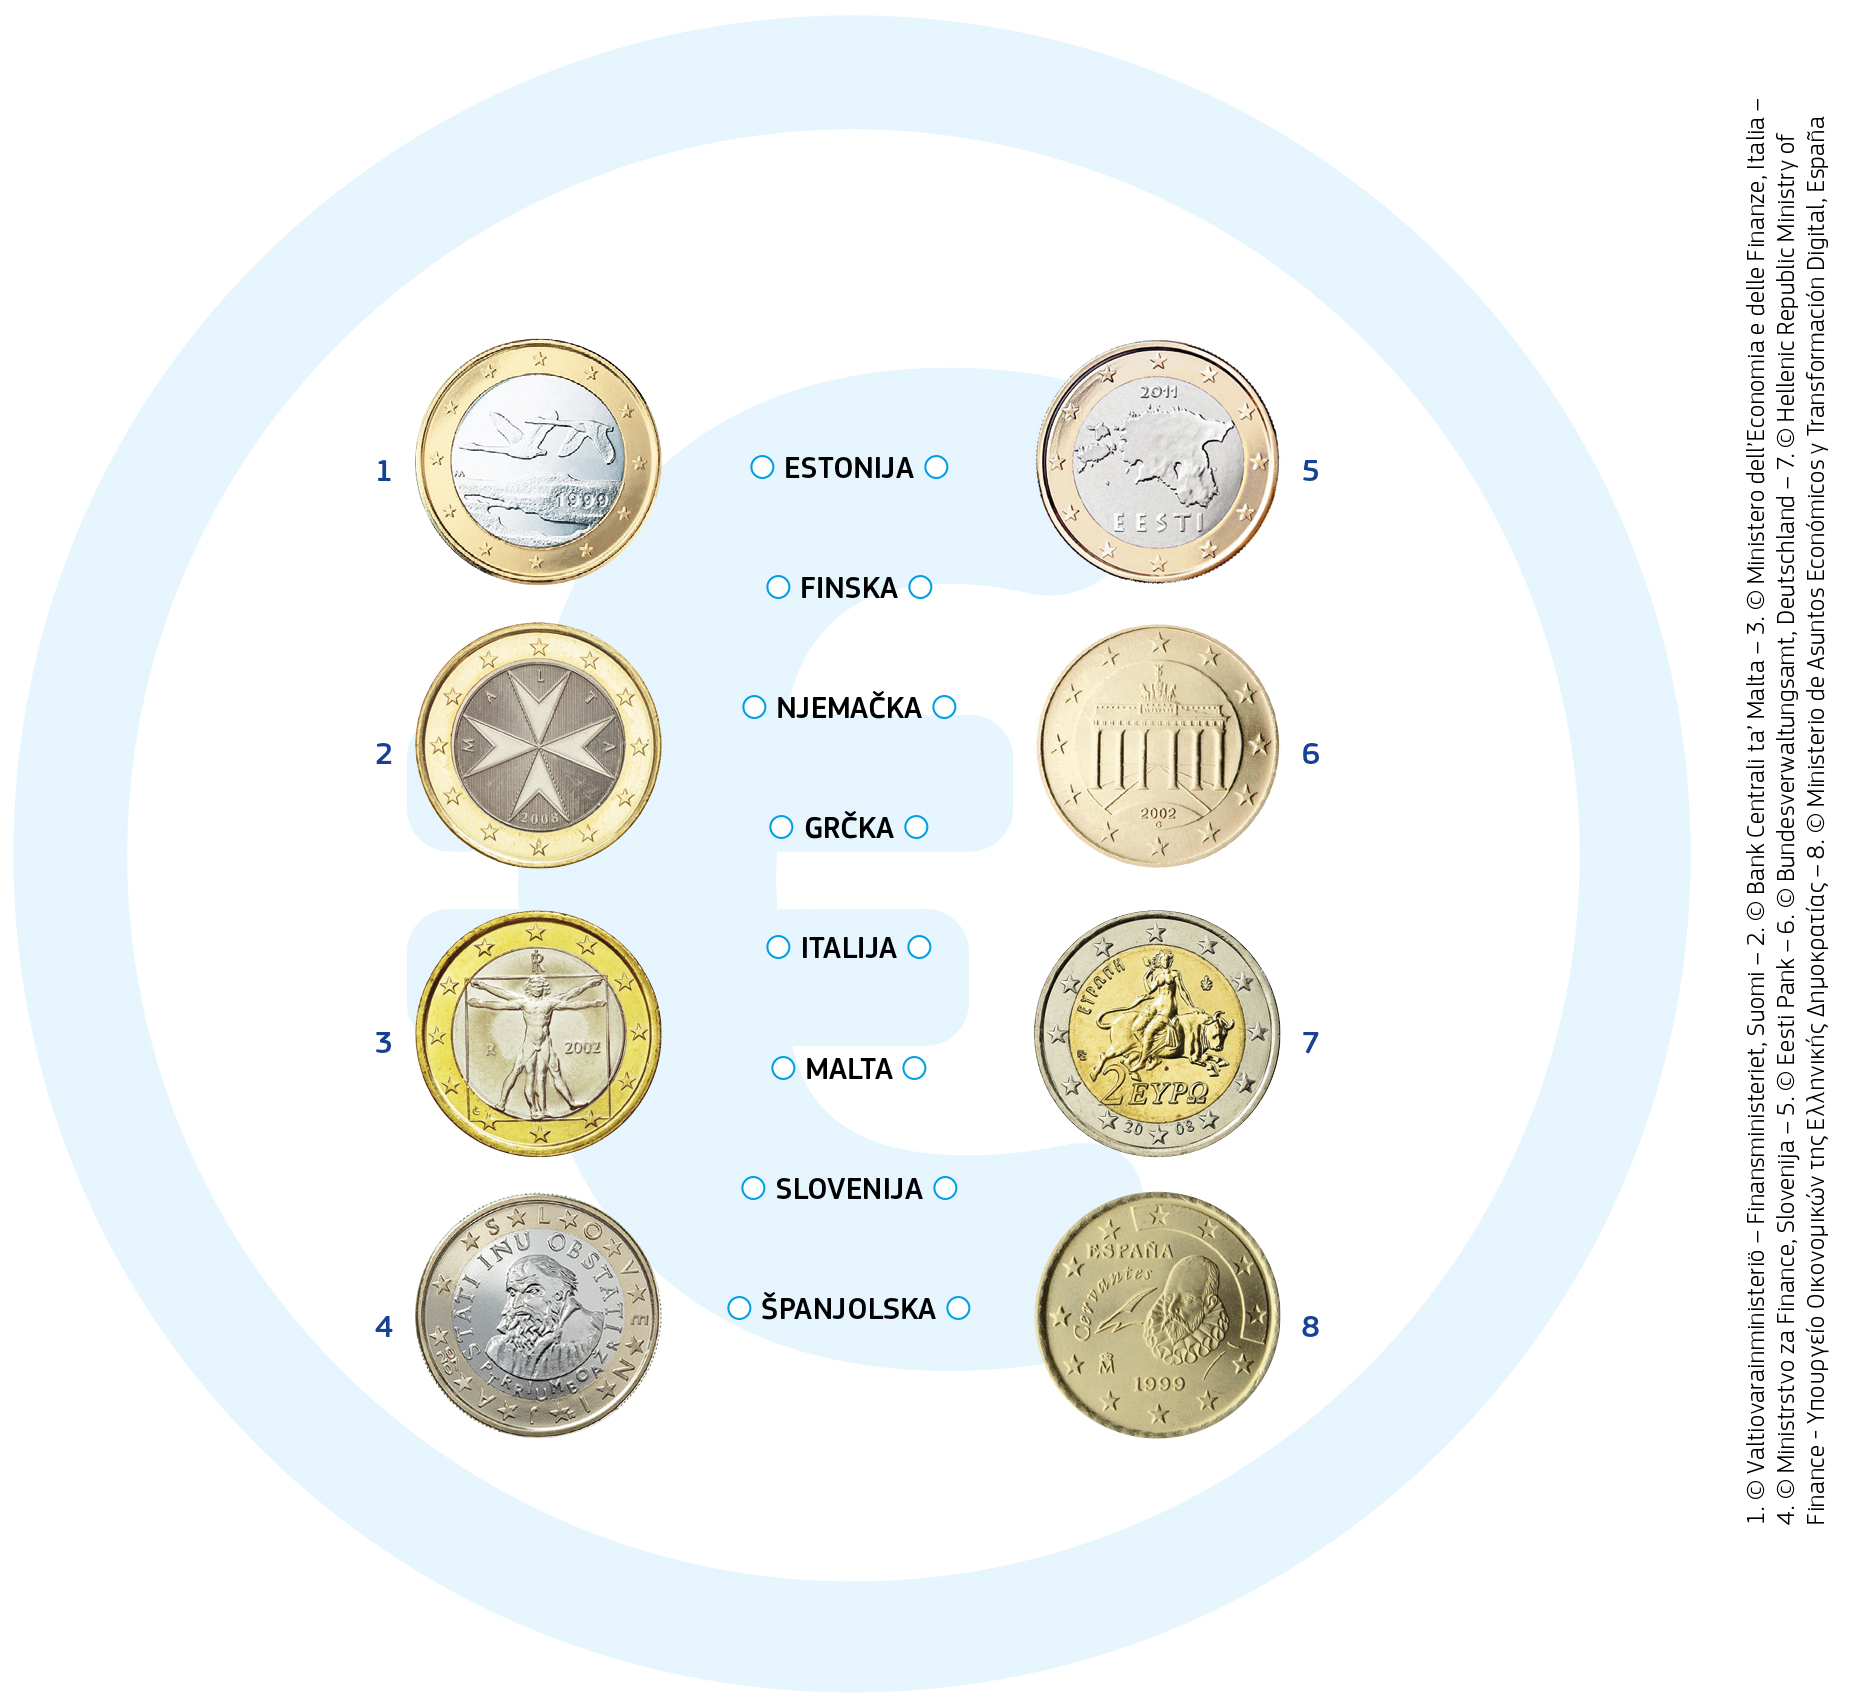 Jedna strana kovanice eura prikazuje kartu Europe i ista je za svaku zemlju. Na drugoj strani kovanice svaka zemlja ima vlastiti dizajn. Evo nekoliko primjera: Na finskoj kovanici od jednog eura nalaze se dva labuda u letu. Kovanice od jednog i dva eura iz Malte imaju amblem koji se naziva malteškim križem. Na talijanskim kovanicama od jednog eura nalazi se poznati crtež Leonarda da Vincija, koji prikazuje idealne proporcije ljudskog tijela. Grčka kovanica od dva eura prikazuje Europu, koju otima Zeus u obličju bika. Europa je lik iz grčke mitologije po kojoj je naš kontinent dobio ime.